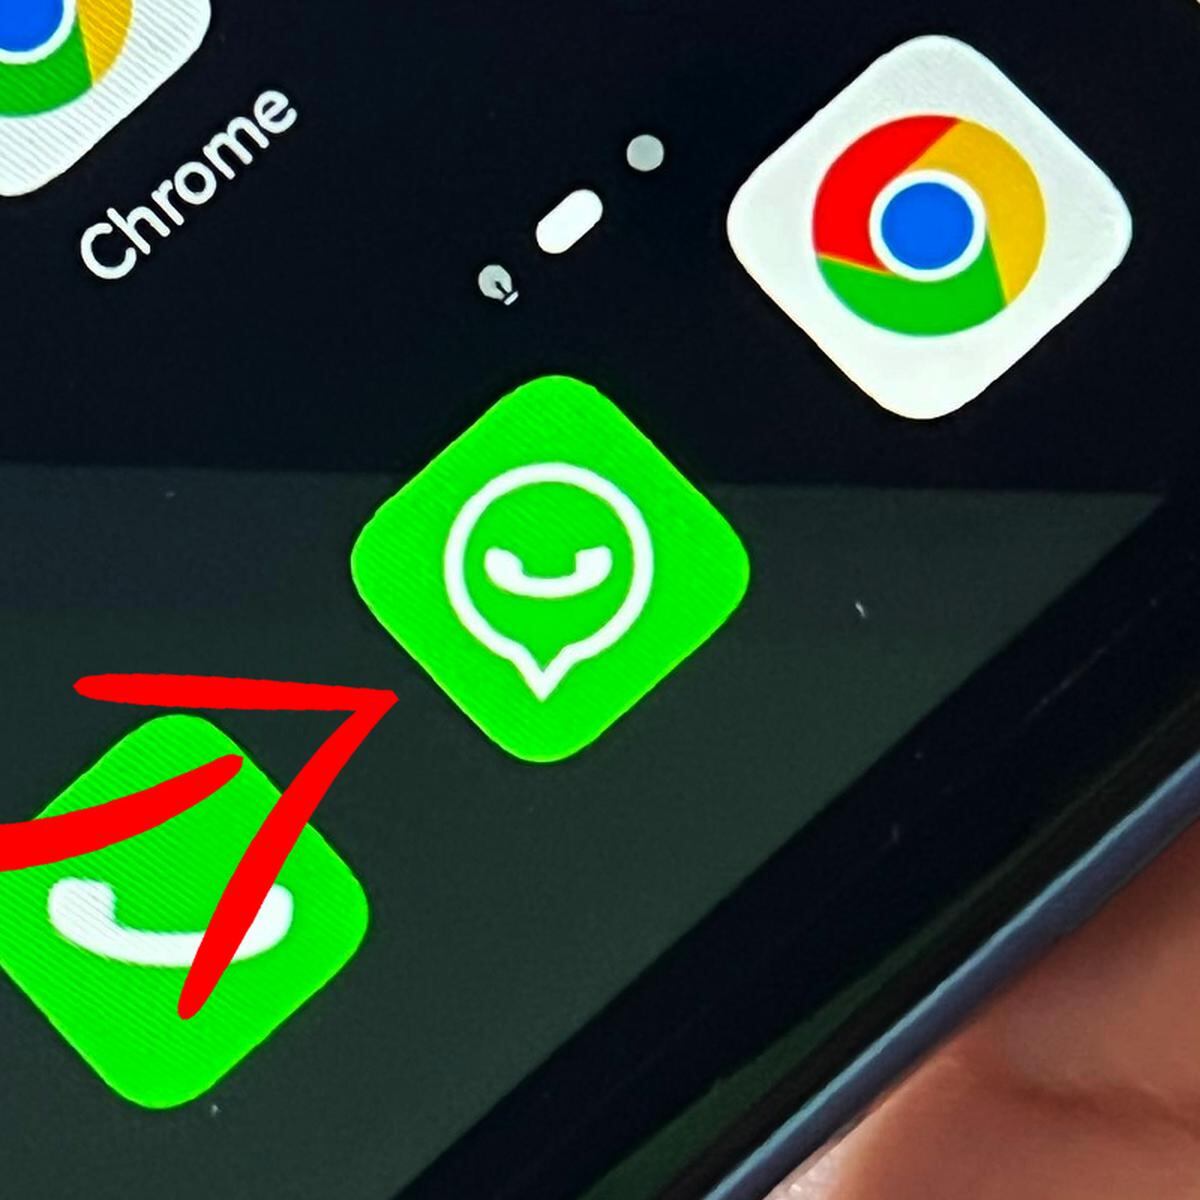 Cómo descargar e instalar WhatsApp en cualquier smarpthone con Android sin  la Play Store y de forma oficial